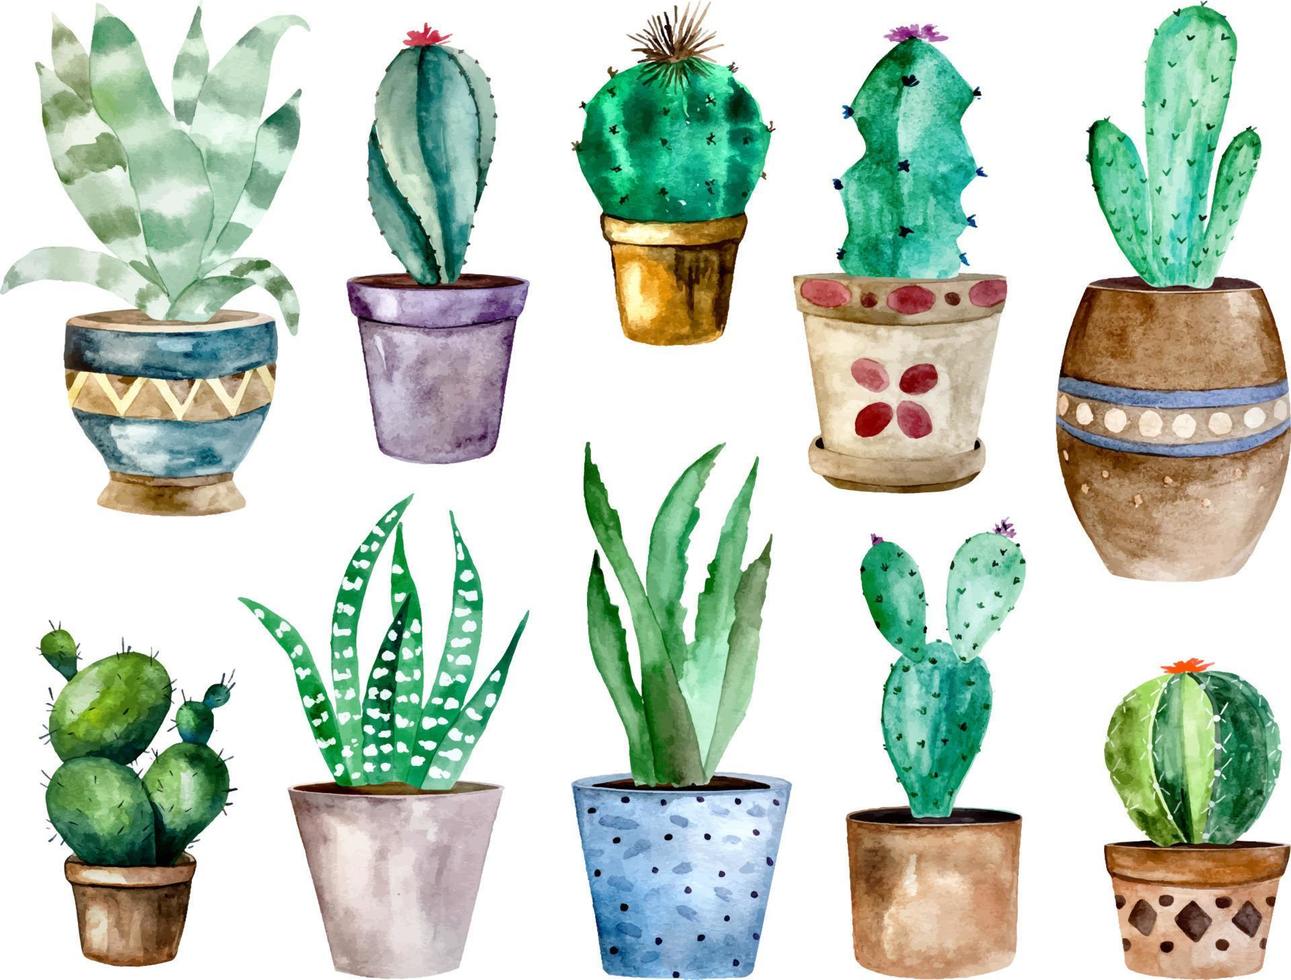 aquarel illustratie van cactussen en succulenten in pot. aquarel individuele bloempot vector